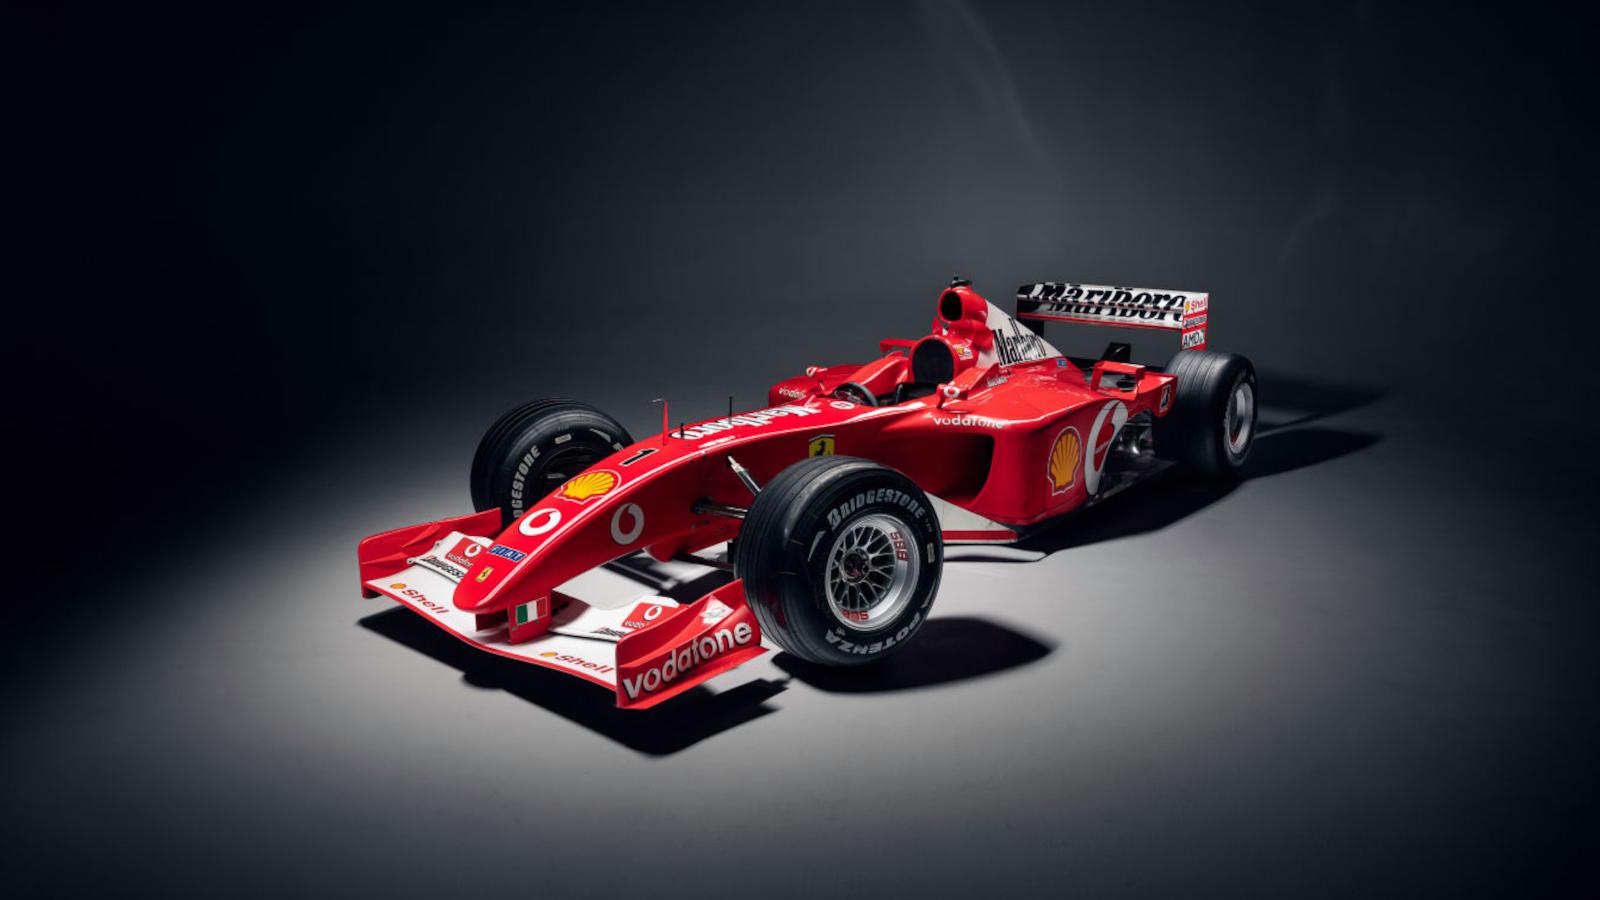 Το μονοθέσιο του Schumacher -Πόσο θα «πιάσει» η κατακόκκινη Ferrari